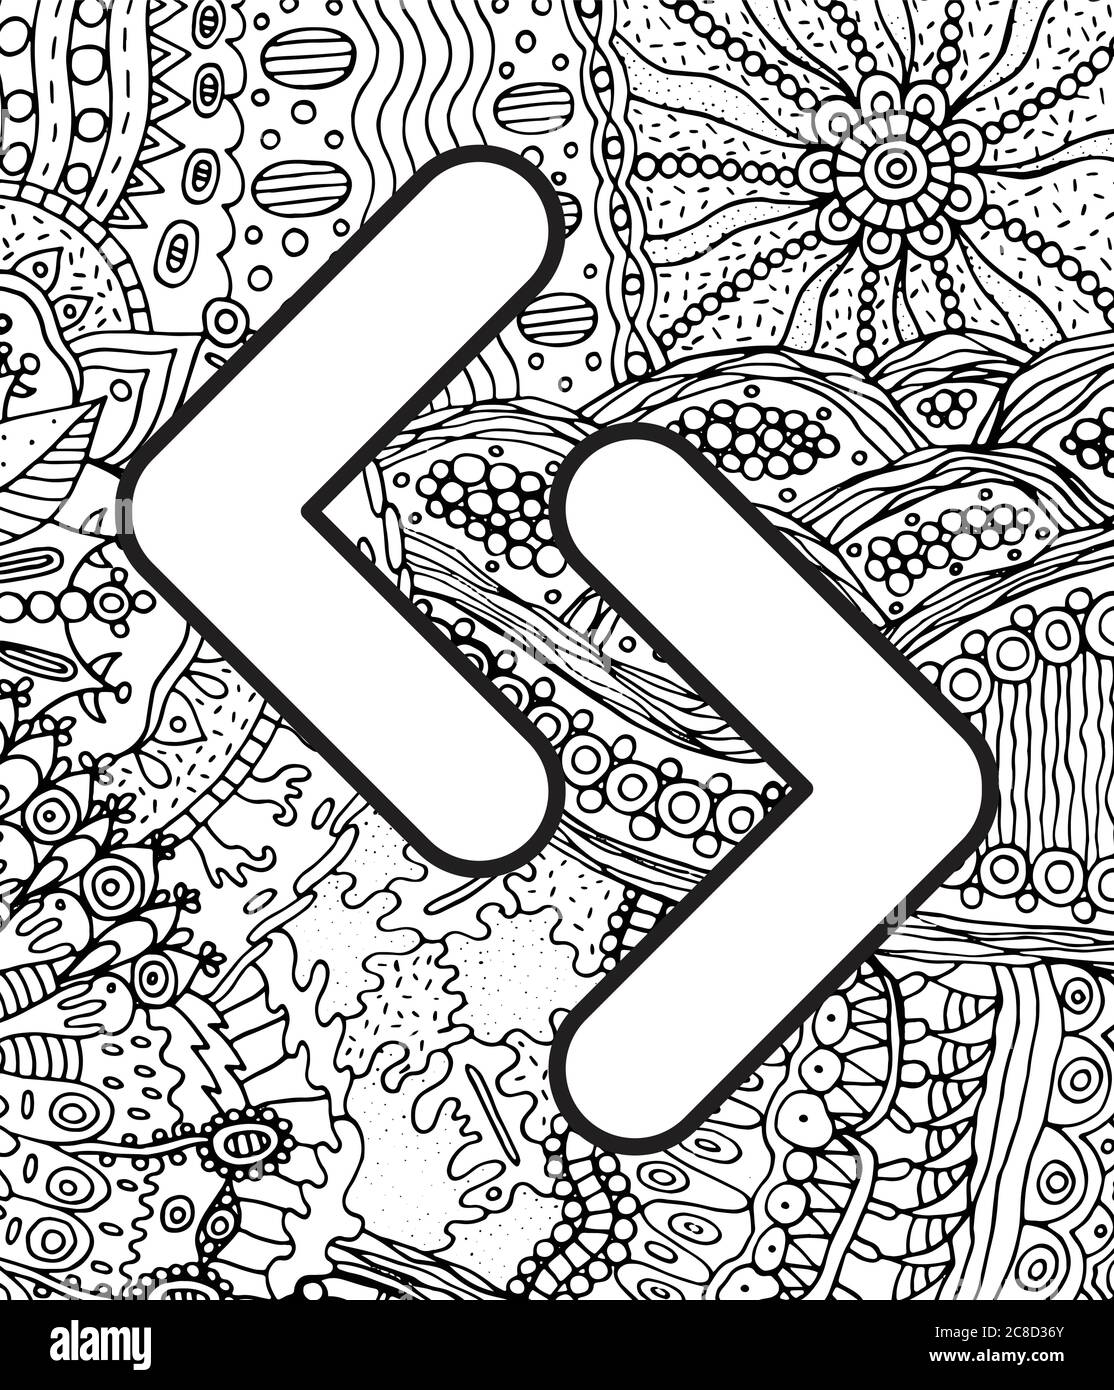 Alte skandinavische Rune jera mit Doodle Ornament Hintergrund. Malseite für Erwachsene. Psychedelisch fantastische mystische Kunstwerke. Vektorgrafik Stock Vektor